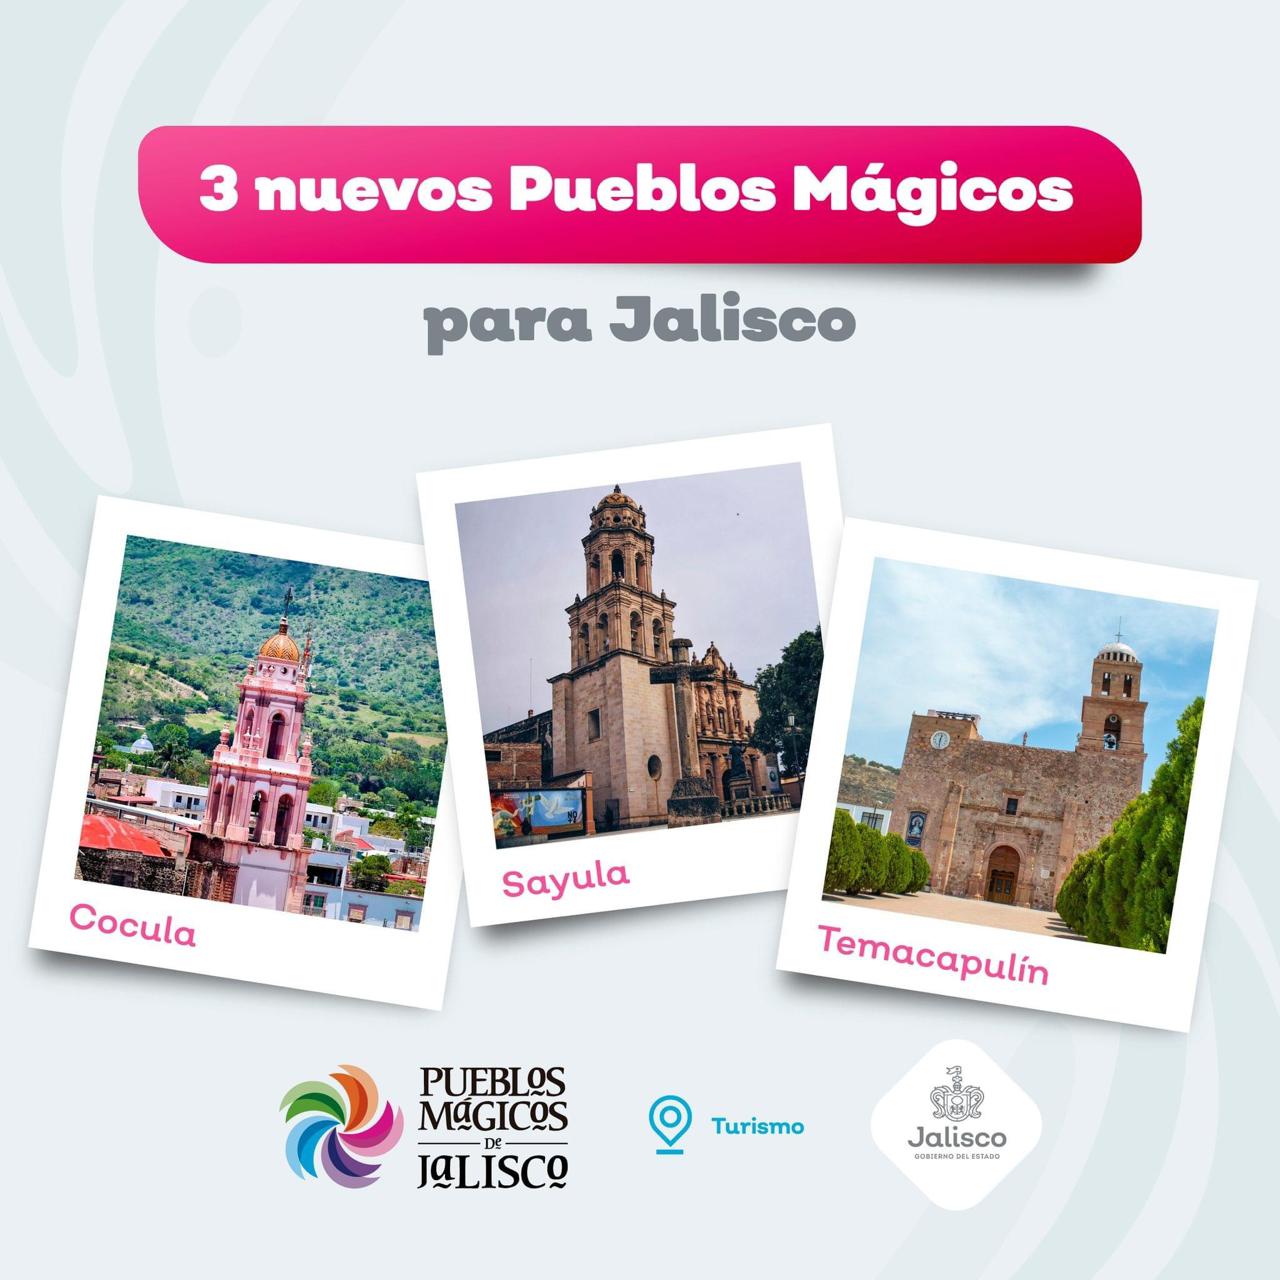 Cocula, Sayula y Temacapulín, nuevos pueblos mágicos de Jalisco